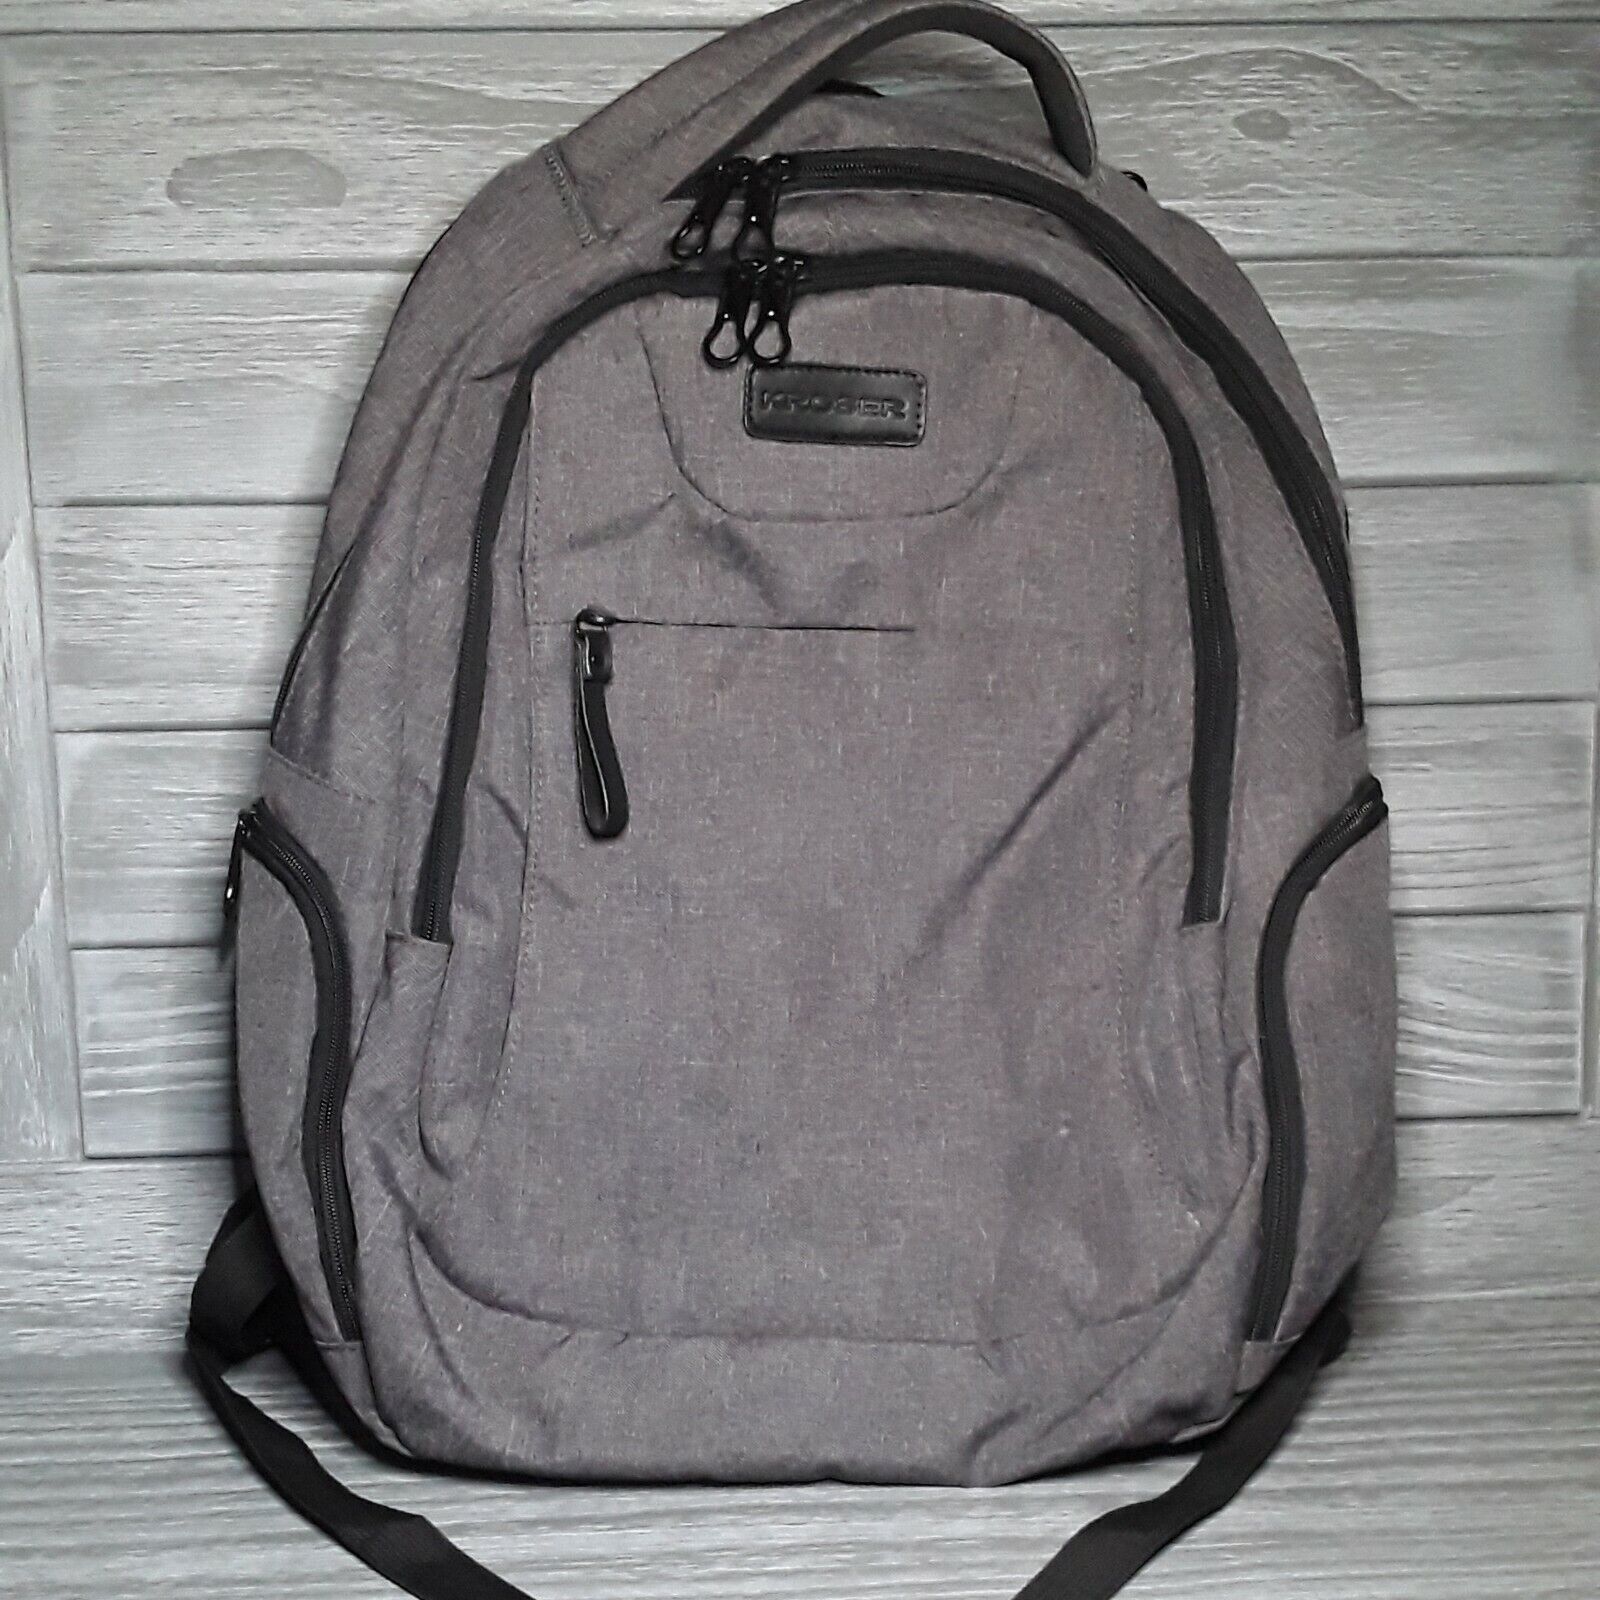 KROSER Laptop Backpack Lightweight w/USB Charge Port Business Travel School Bag